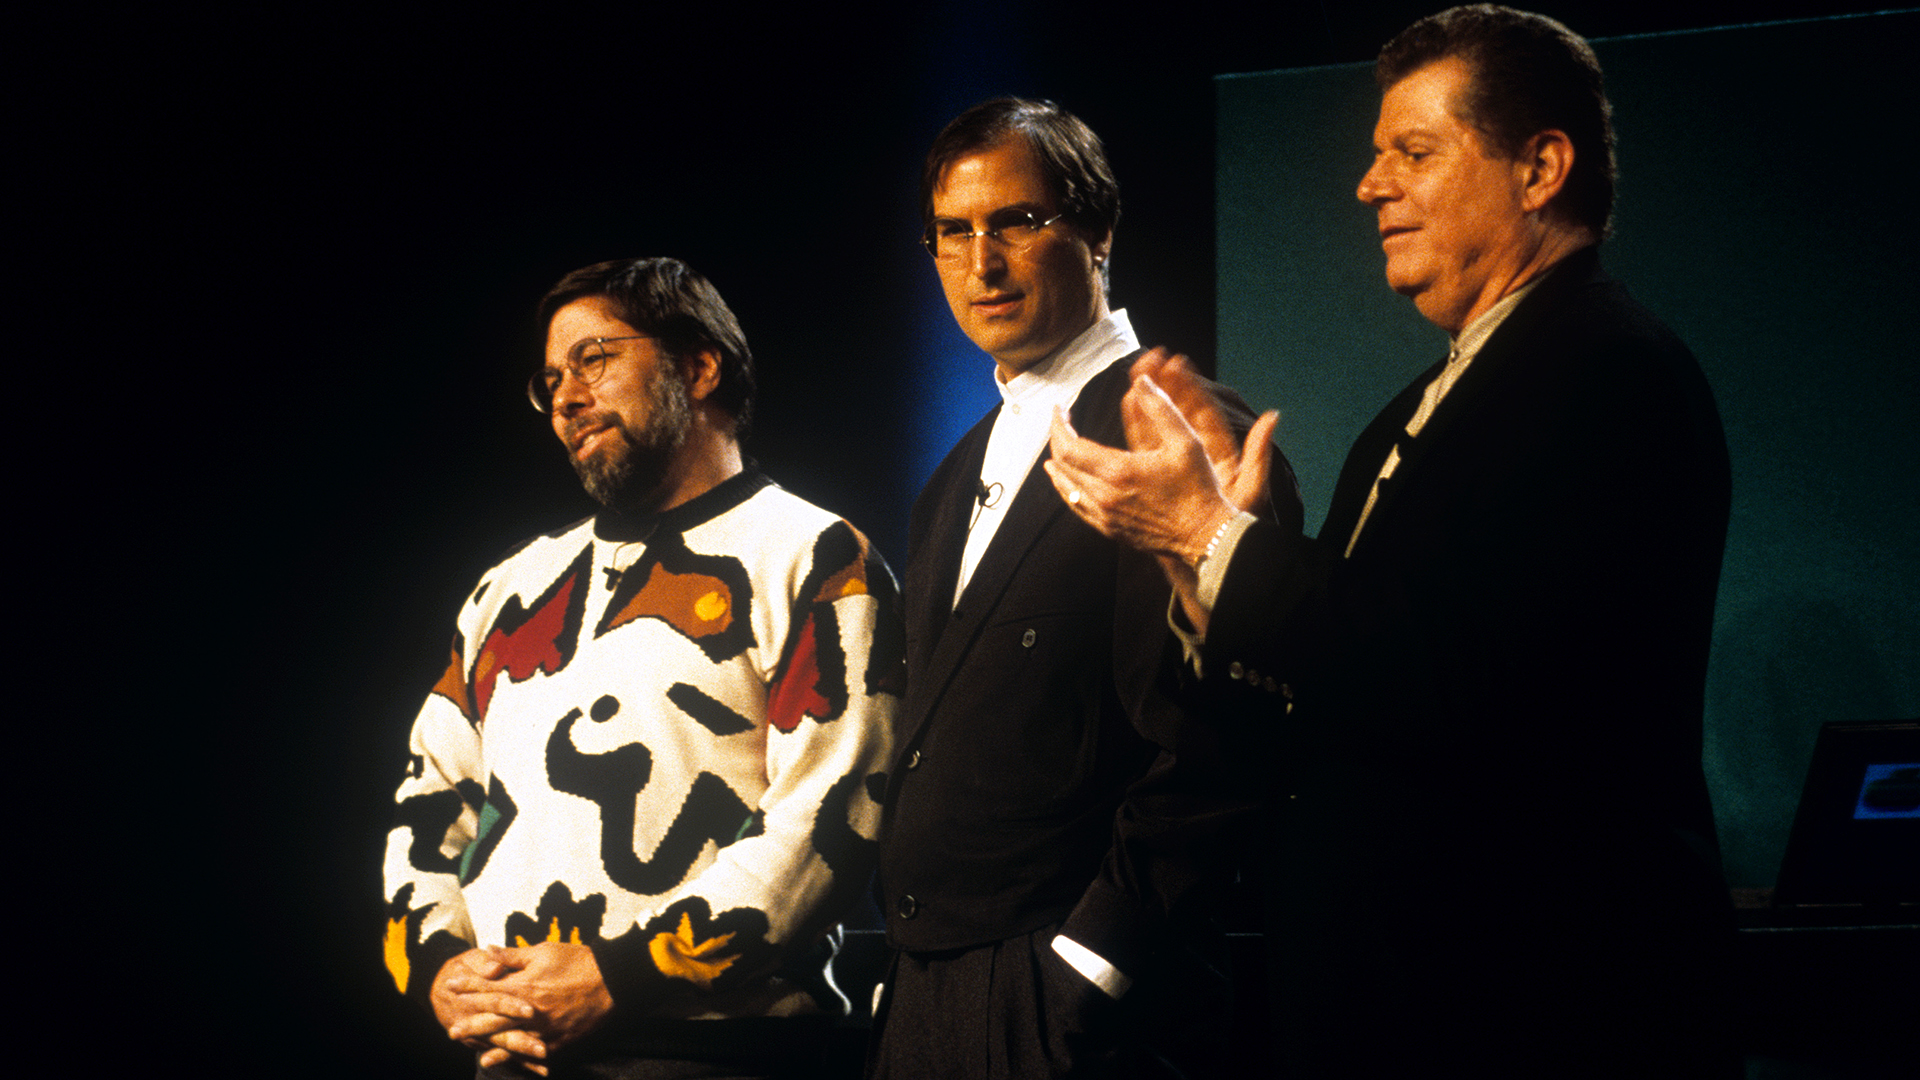 Steve Wozniak y Steve Jobs con el CEO de Apple en 1997 Gil Amelio en San Francisco (REUTERS)